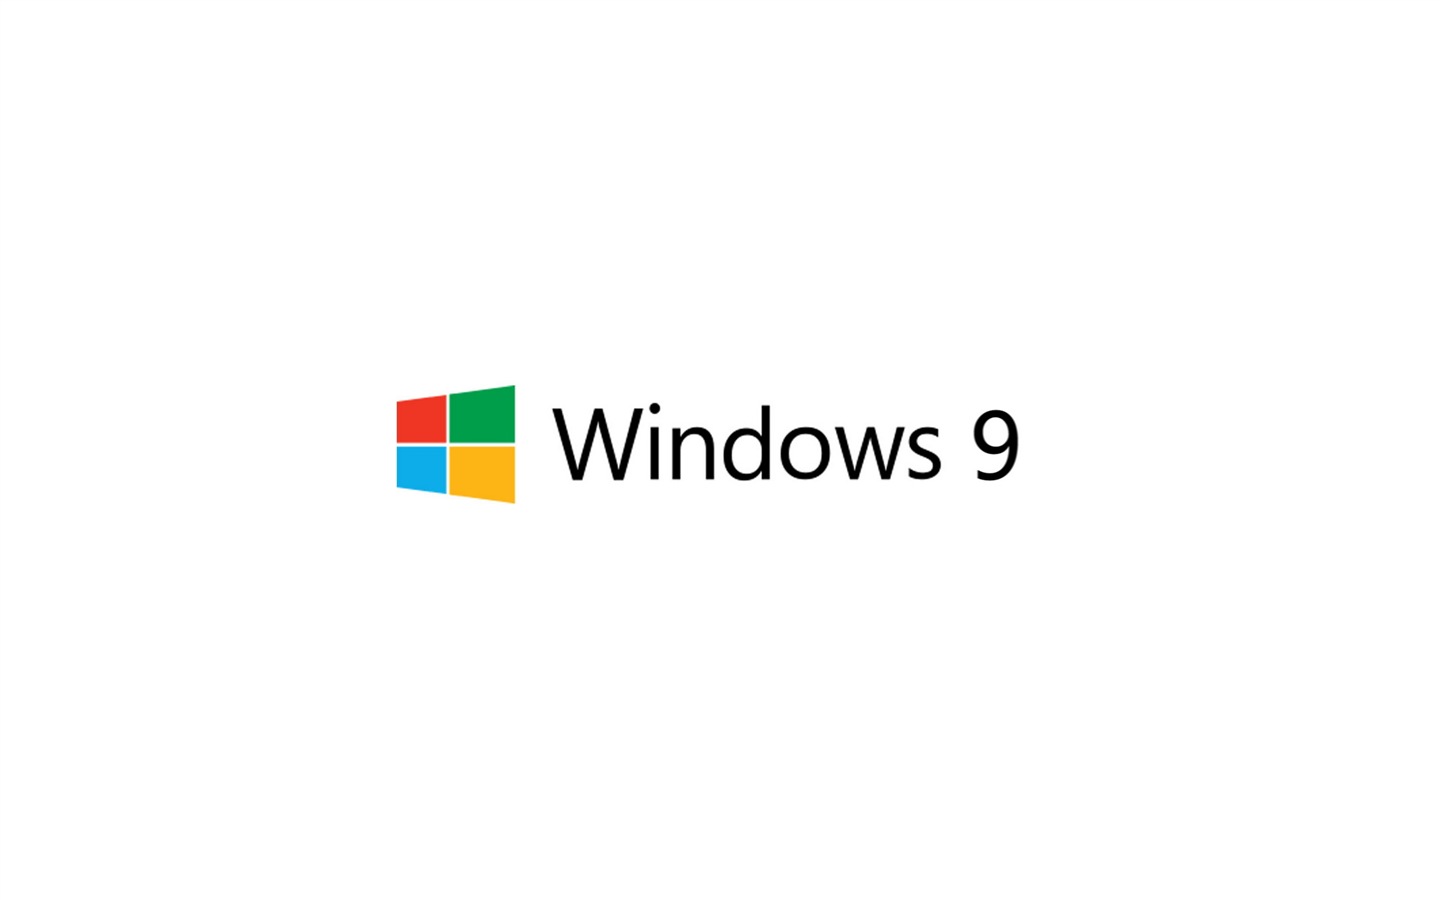 微软 Windows 9 系统主题 高清壁纸7 - 1440x900